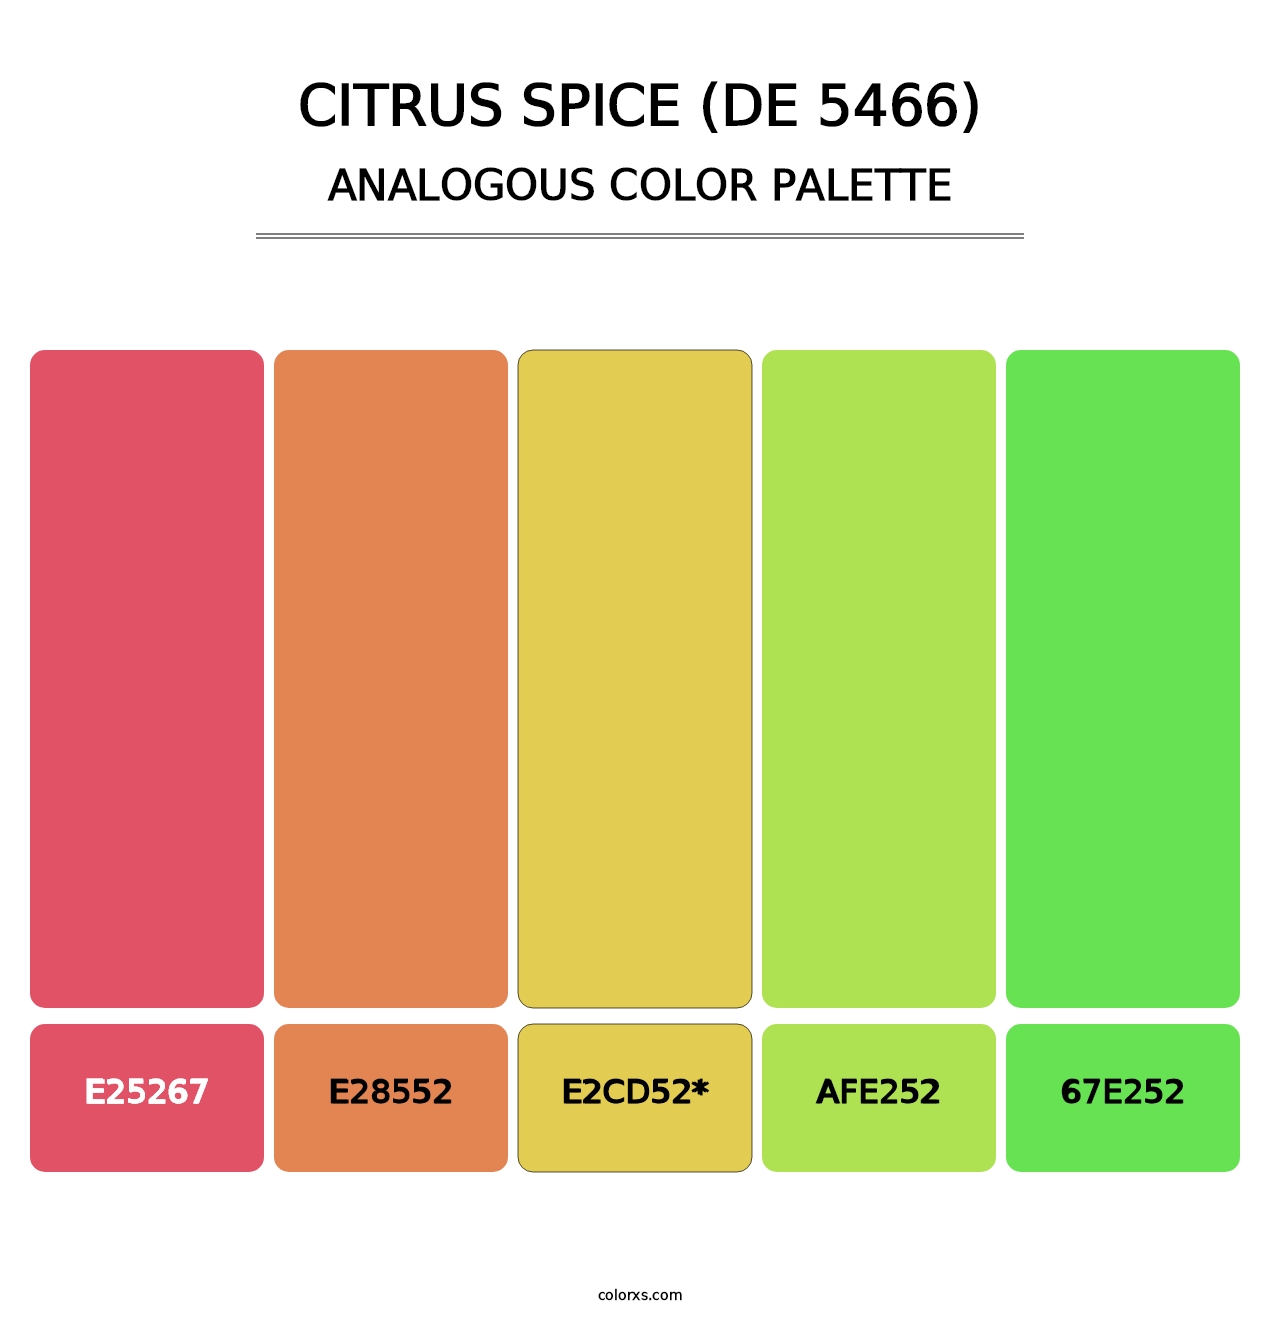 Citrus Spice (DE 5466) - Analogous Color Palette